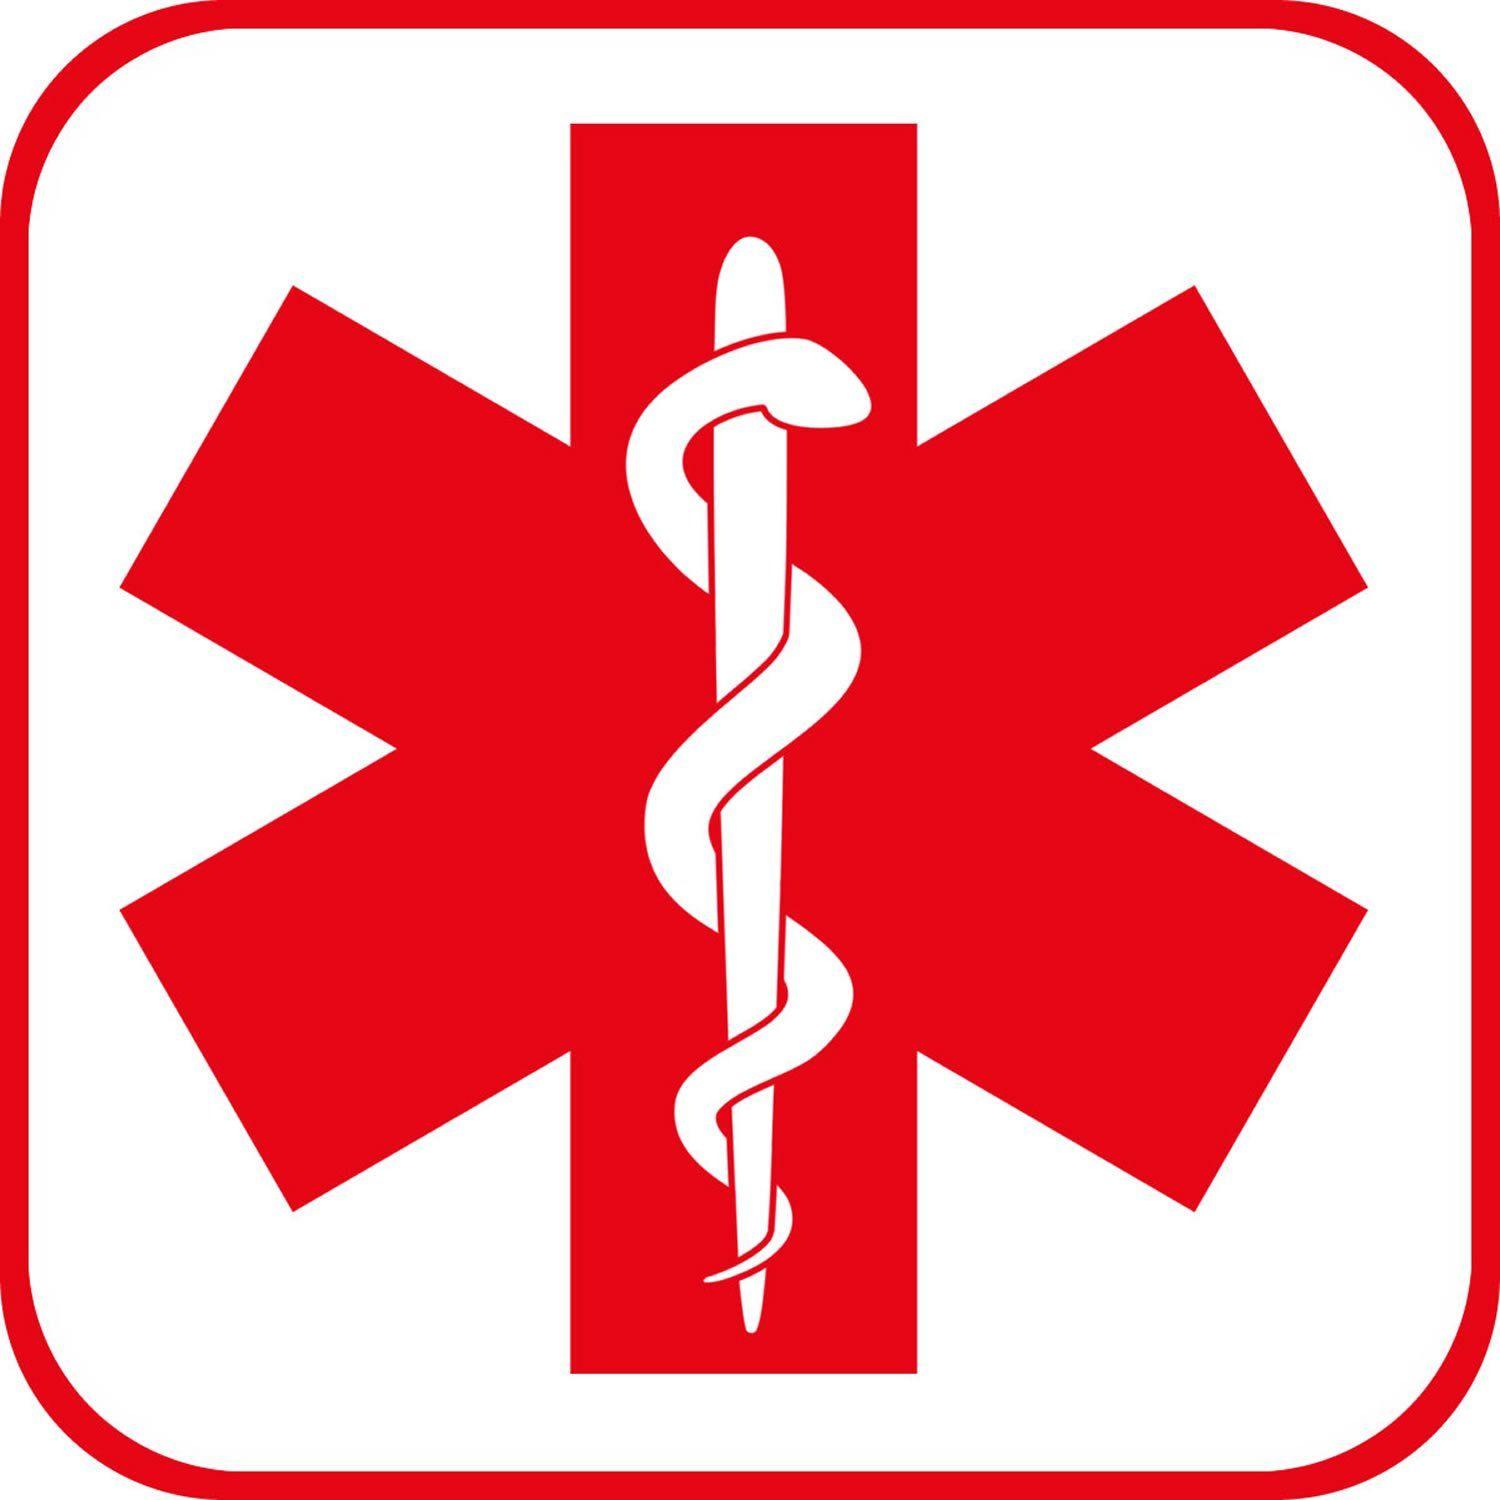 Medical Bracelet Logo - Medic Alert Bracelet for Emergency Situations Abroad